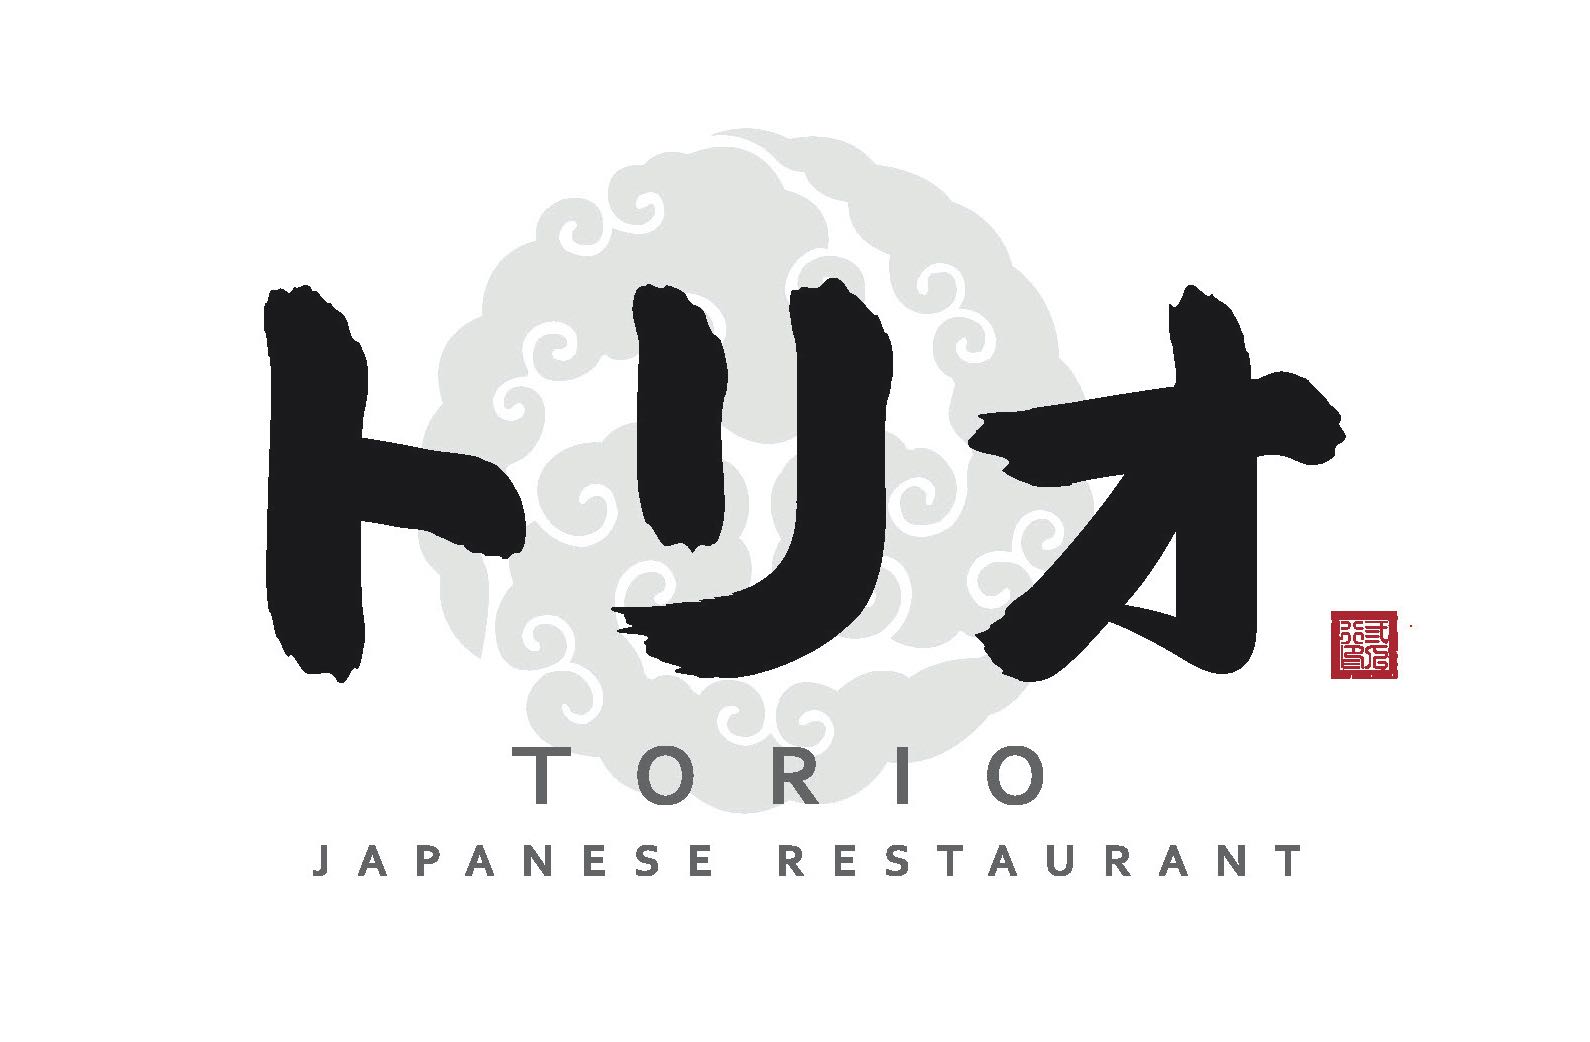 Torio Japanese Restaurant Pte. Ltd. logo